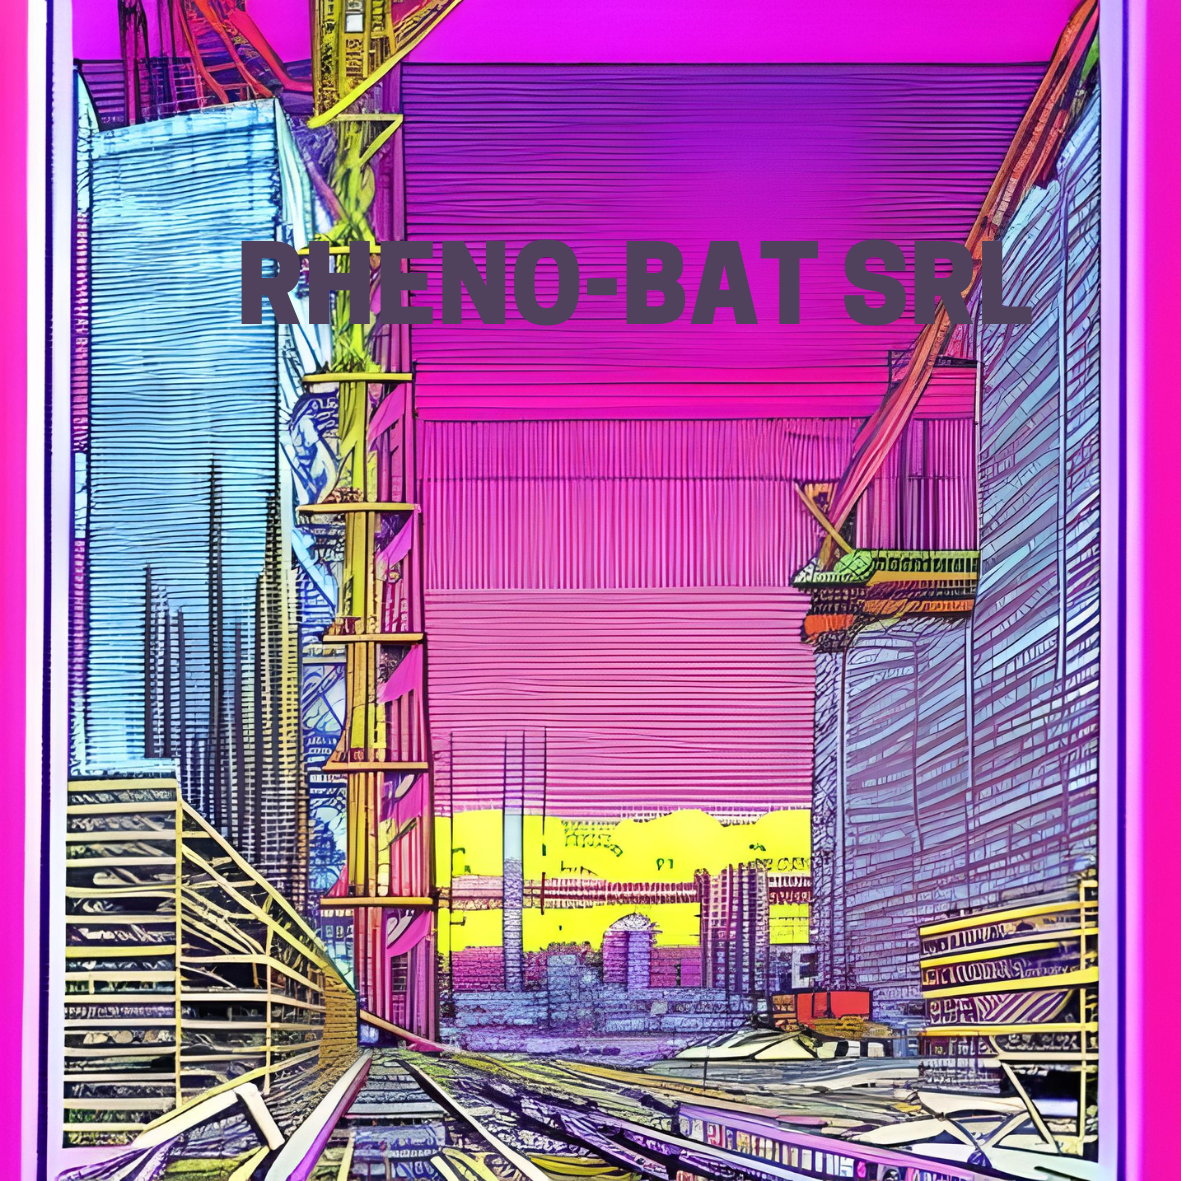 Rheno-Bat SRL - 1